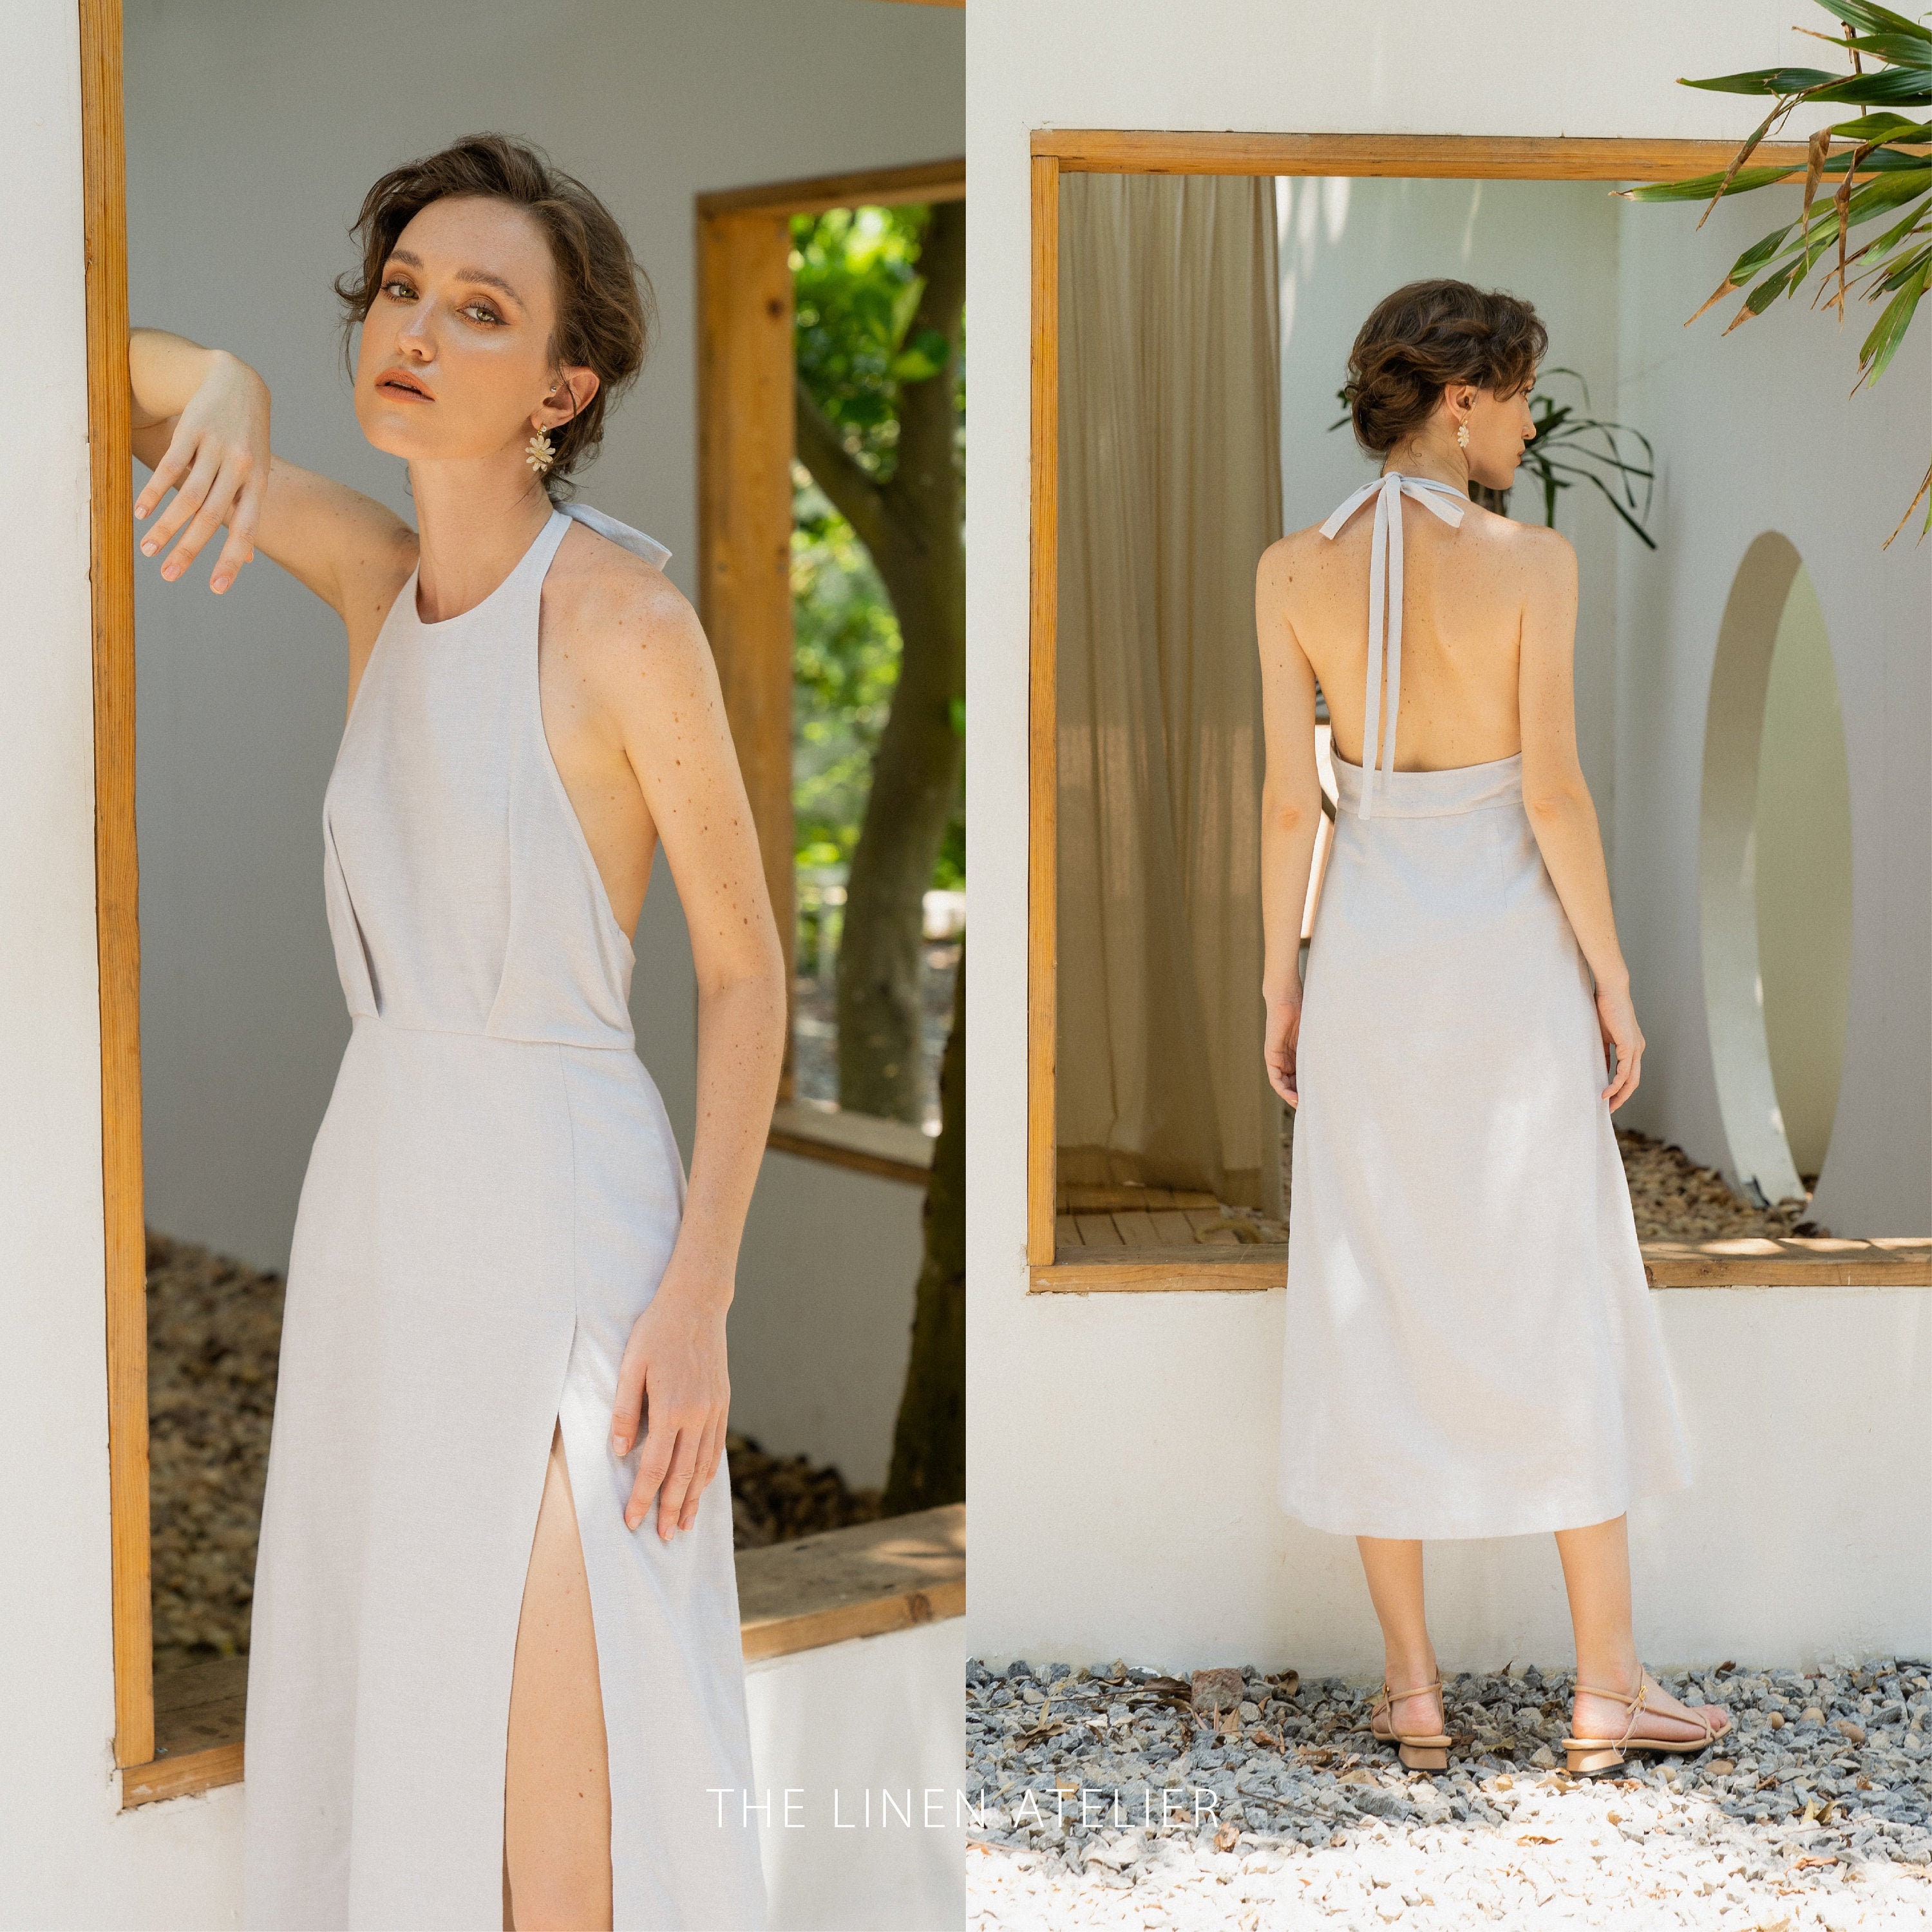 CASSI Linen Backless Dress With Halter Neck Backless Halter Dress White  Linen Dress Evening Dress Linen Beach Dress Romantic Dress 